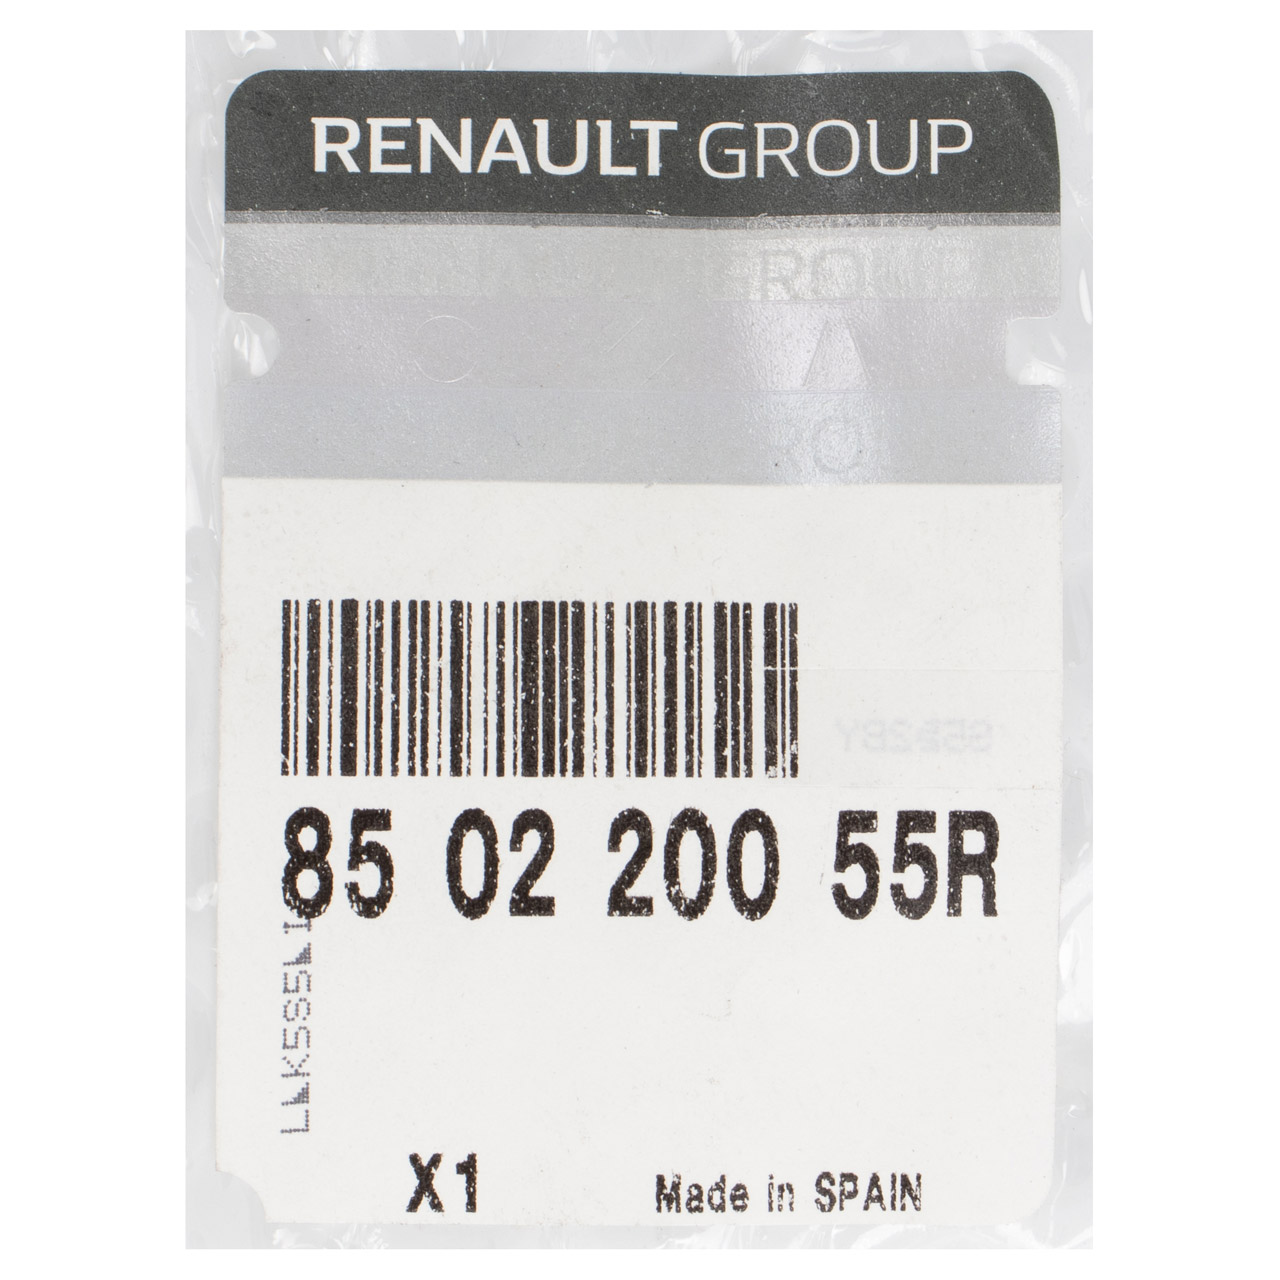 ORIGINAL Renault Stoßstange Stoßfänger Heckstange Megane 3 Schrägheck hinten 850220055R